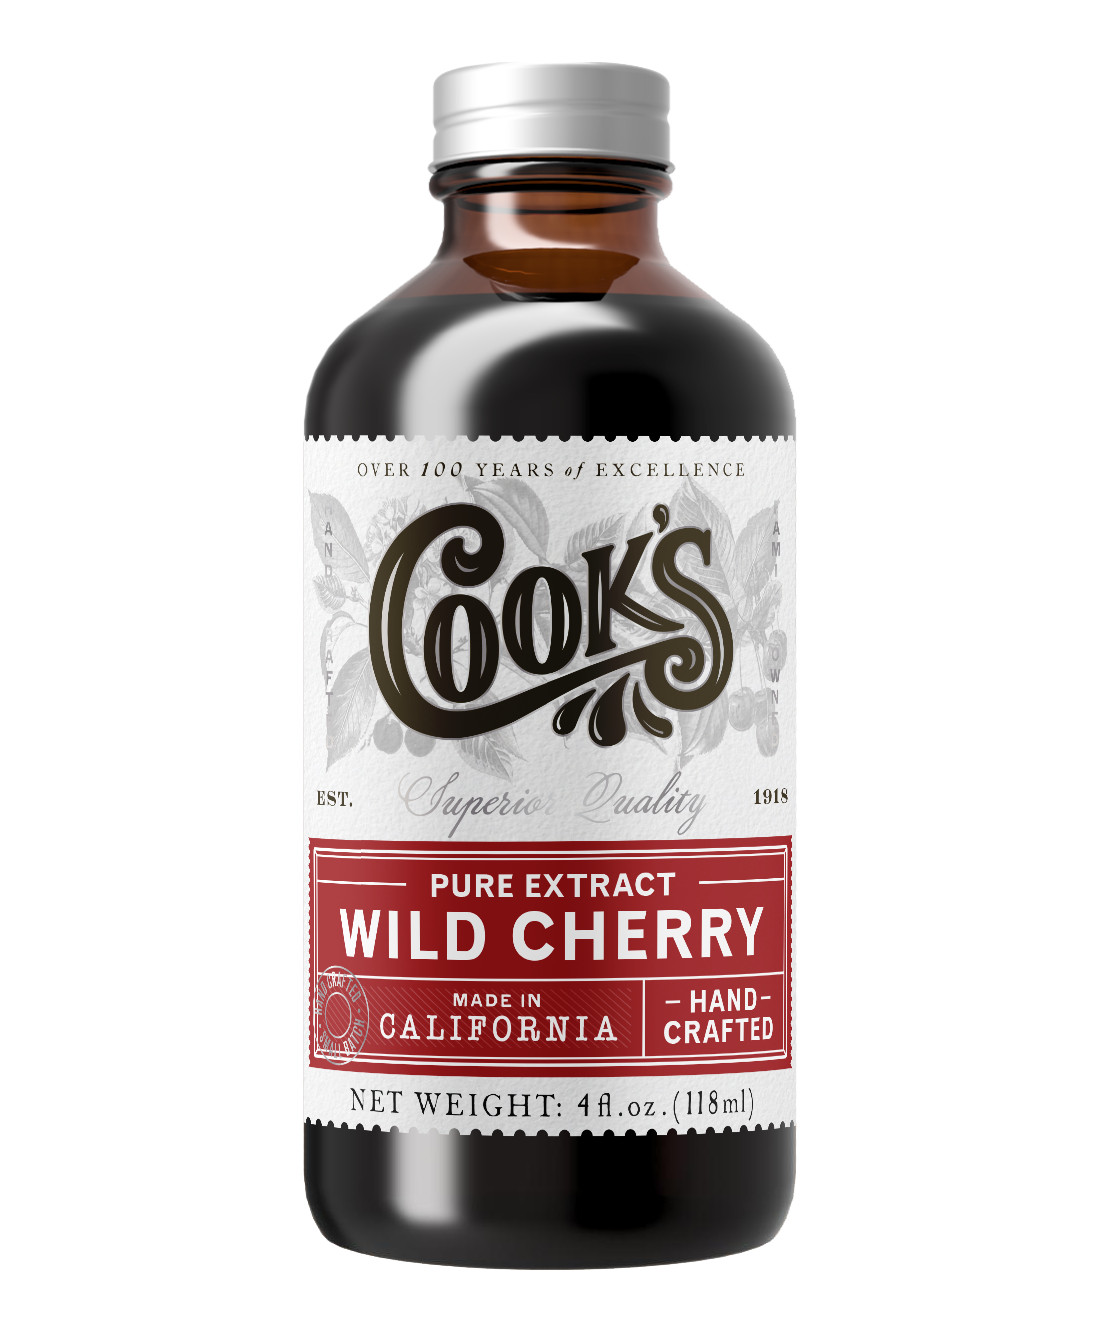 Pure Wild Cherry Extract 4oz